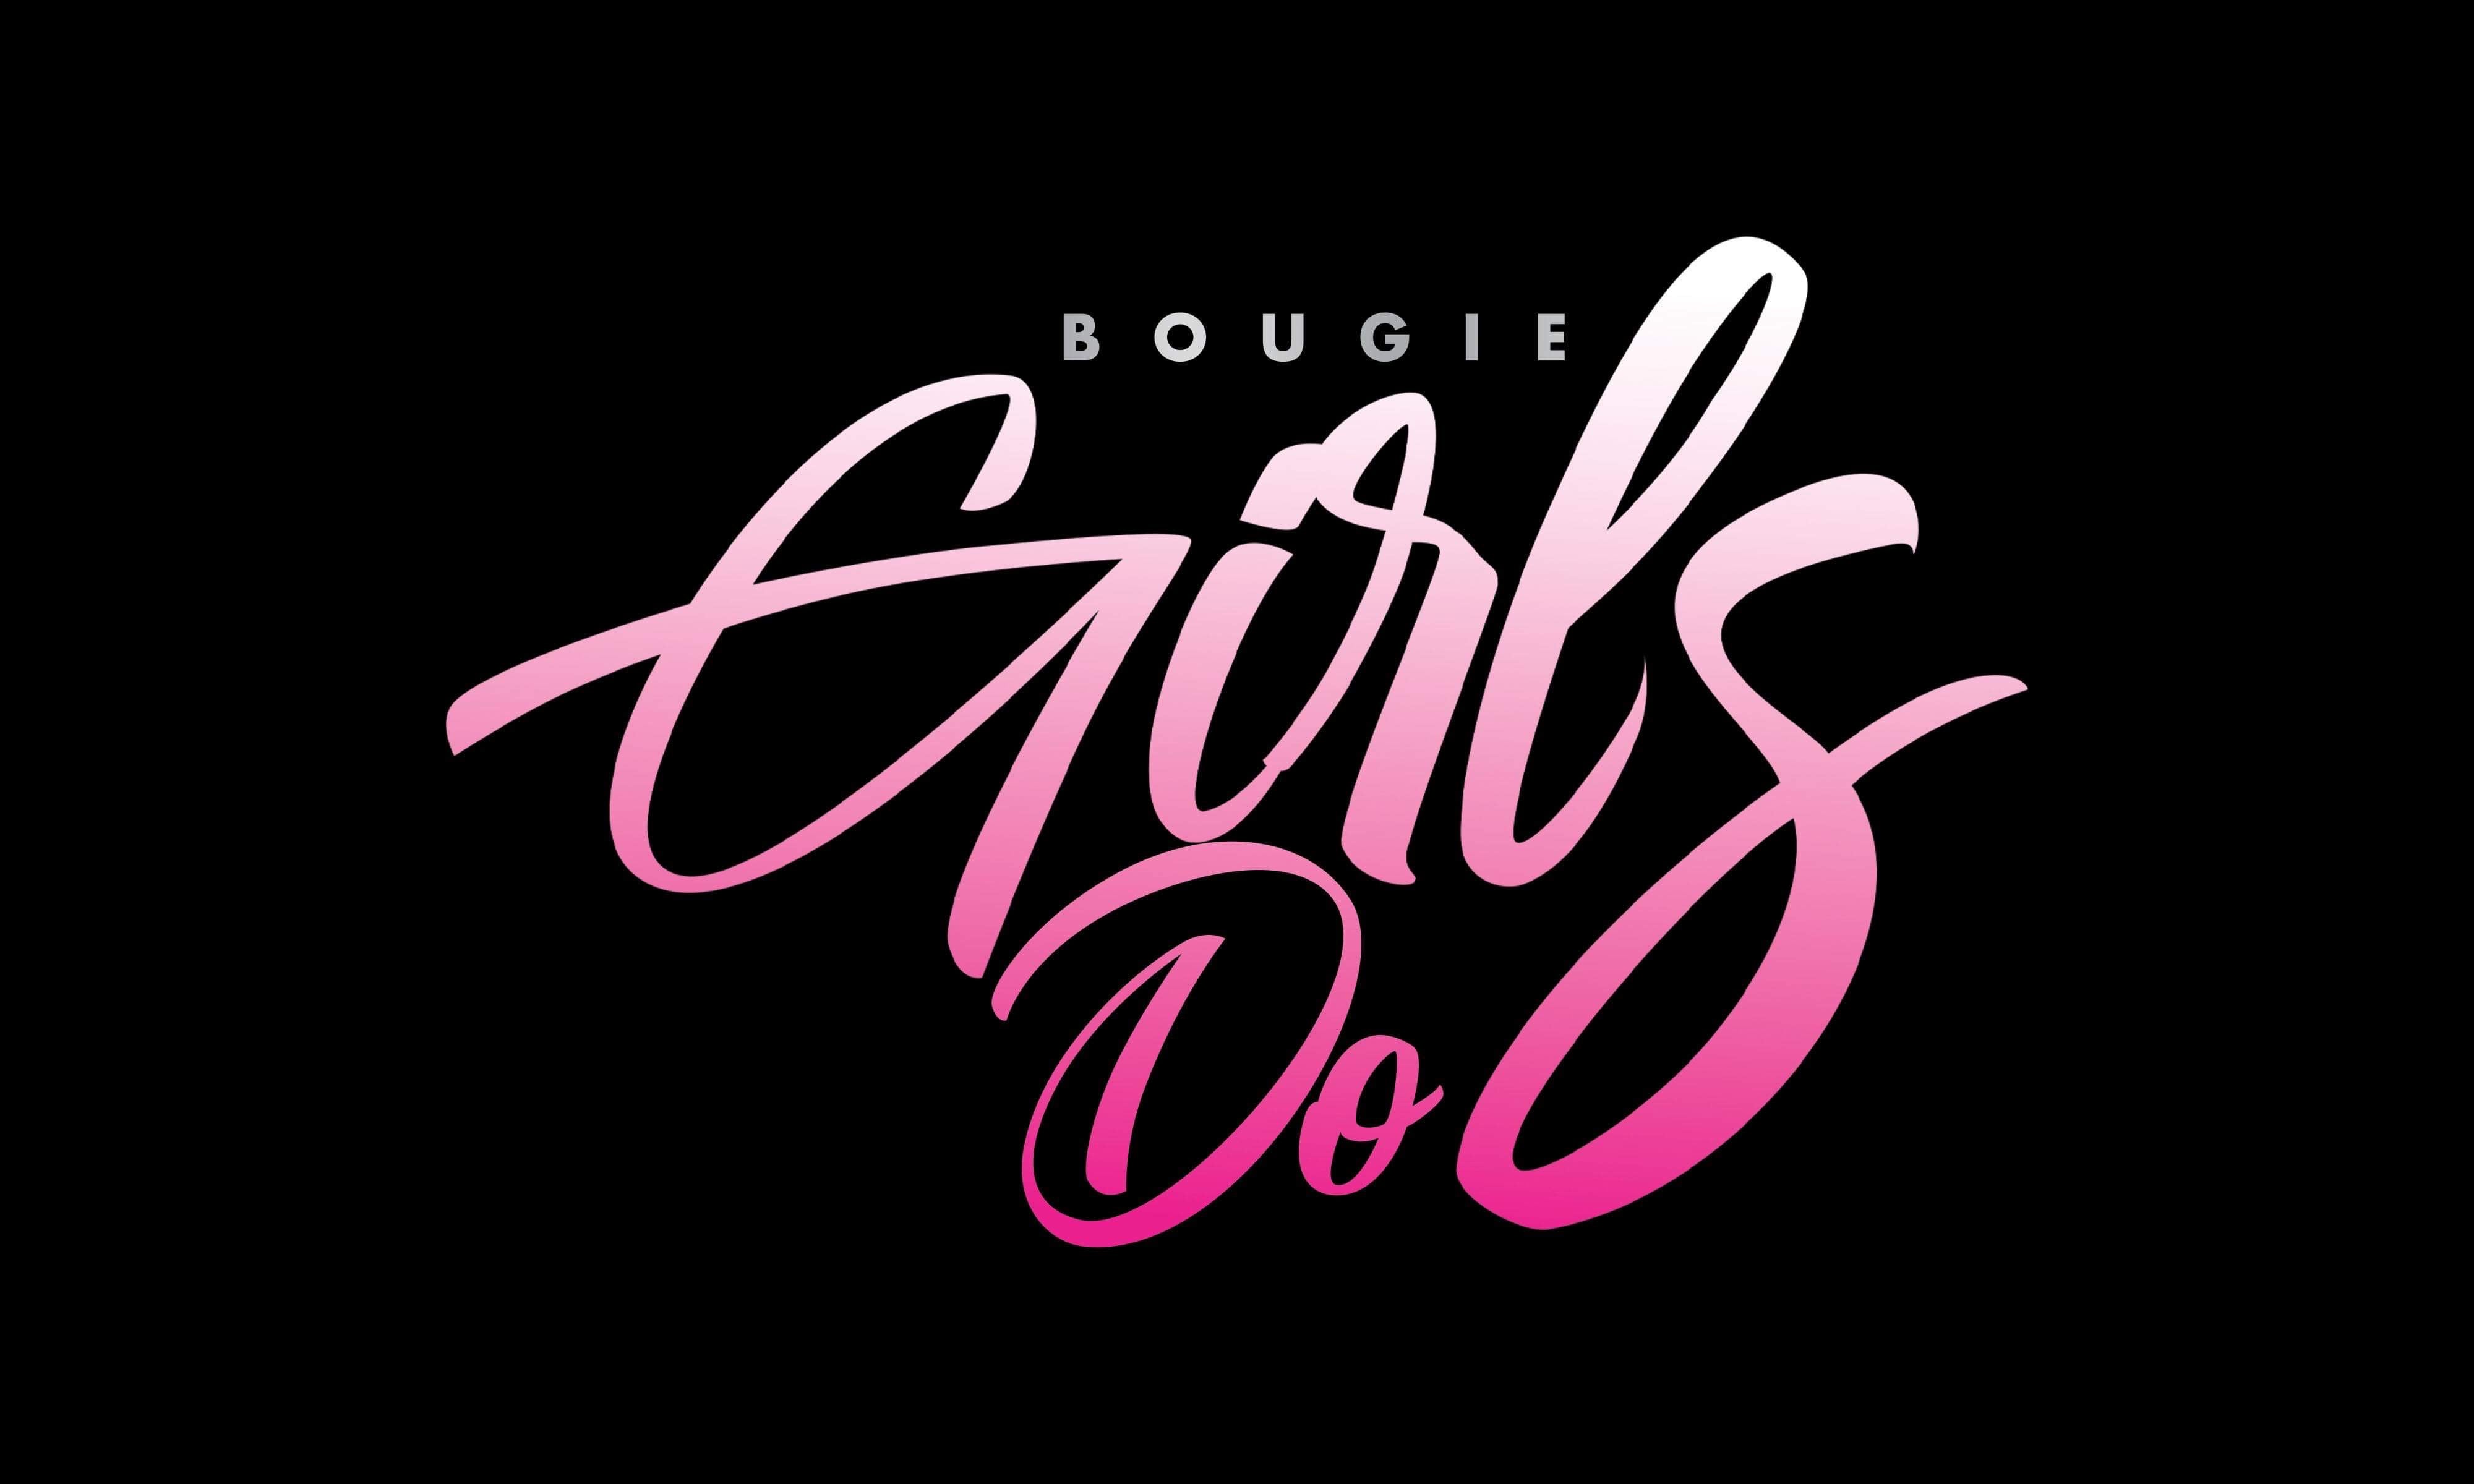 Bougie Girls Do